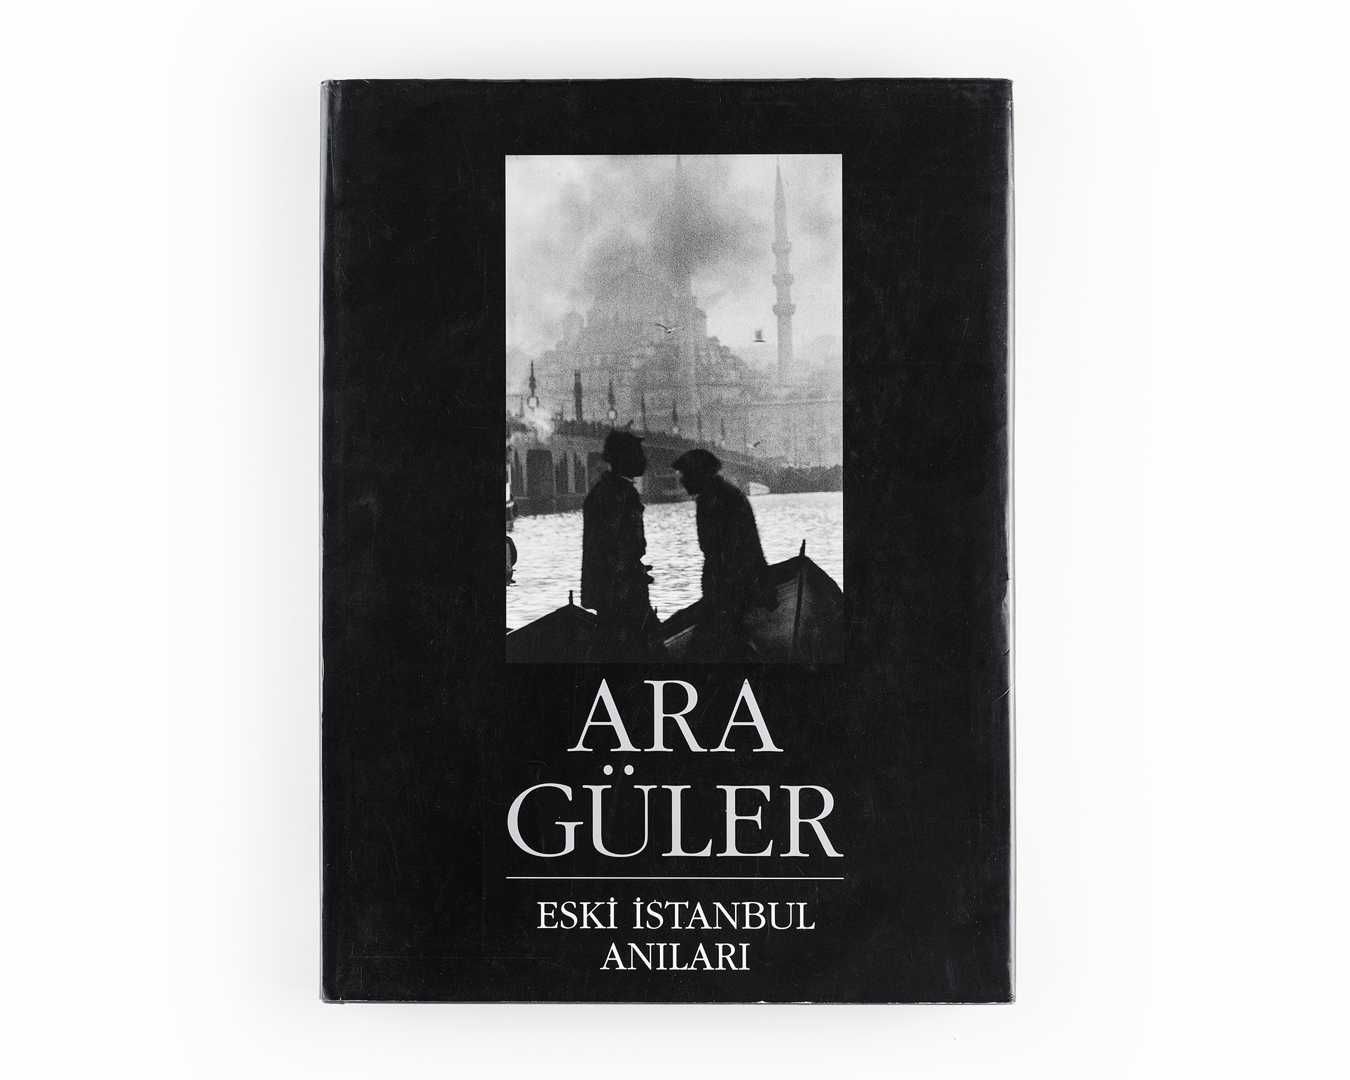 Книга Ara Guler's: Eski Istanbul Anıları